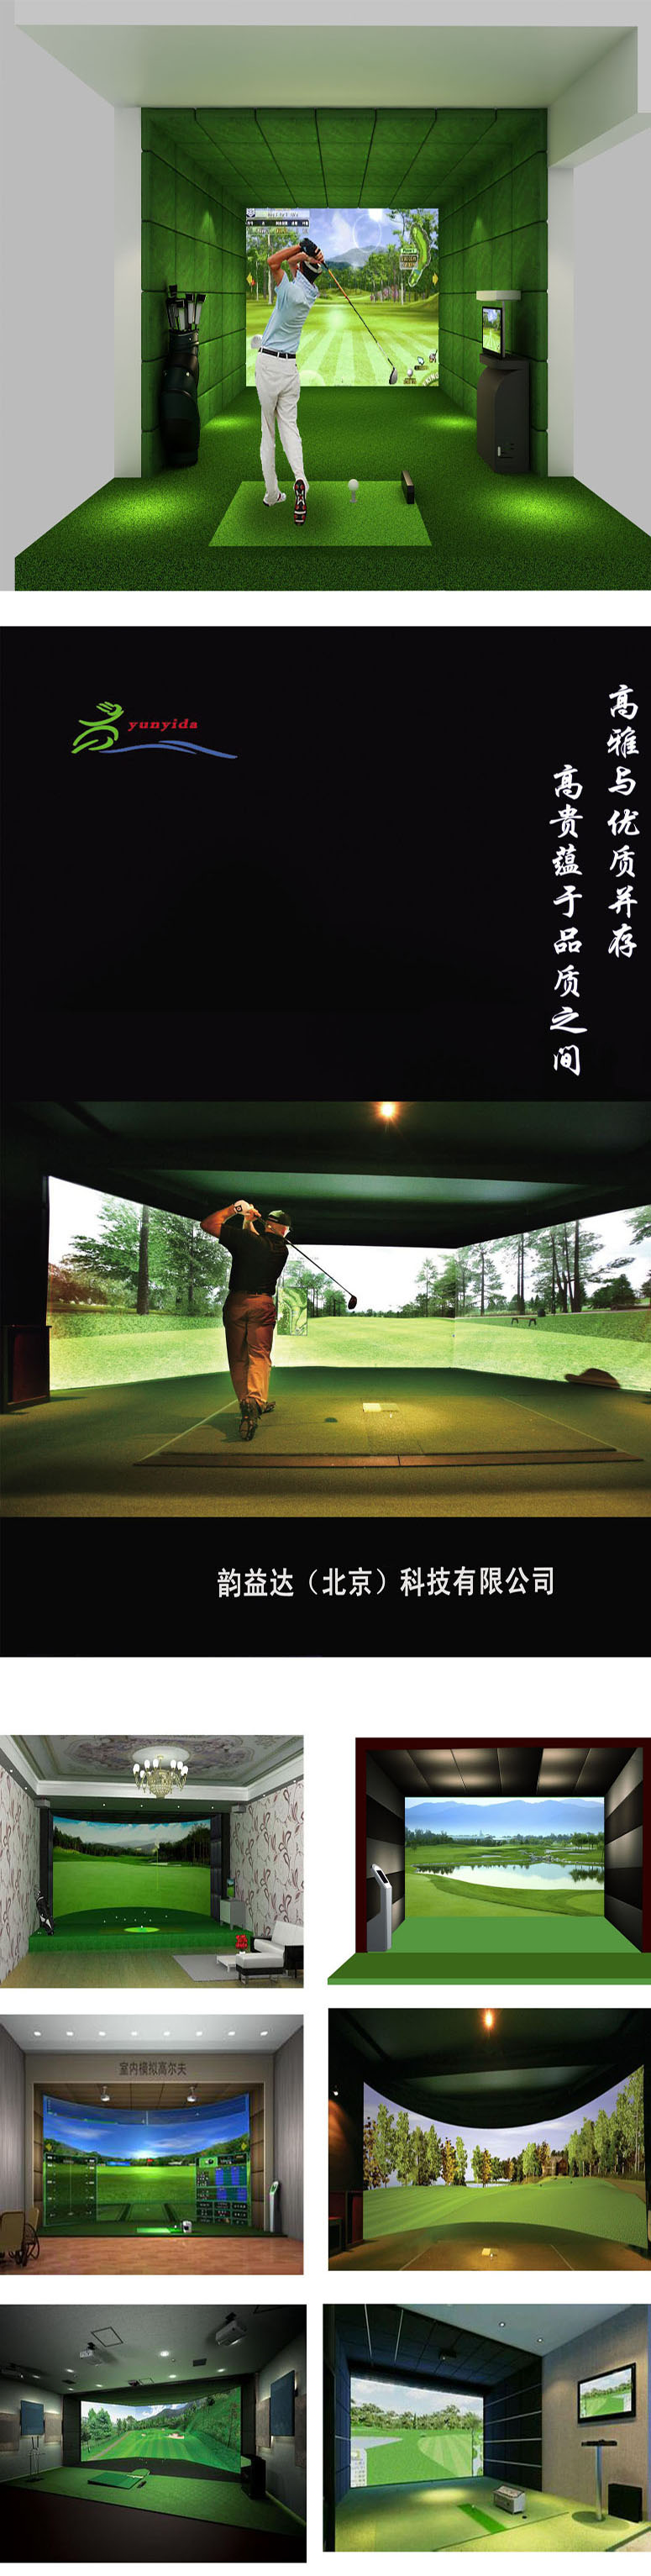 高尔夫模拟系统训练 优势二.jpg